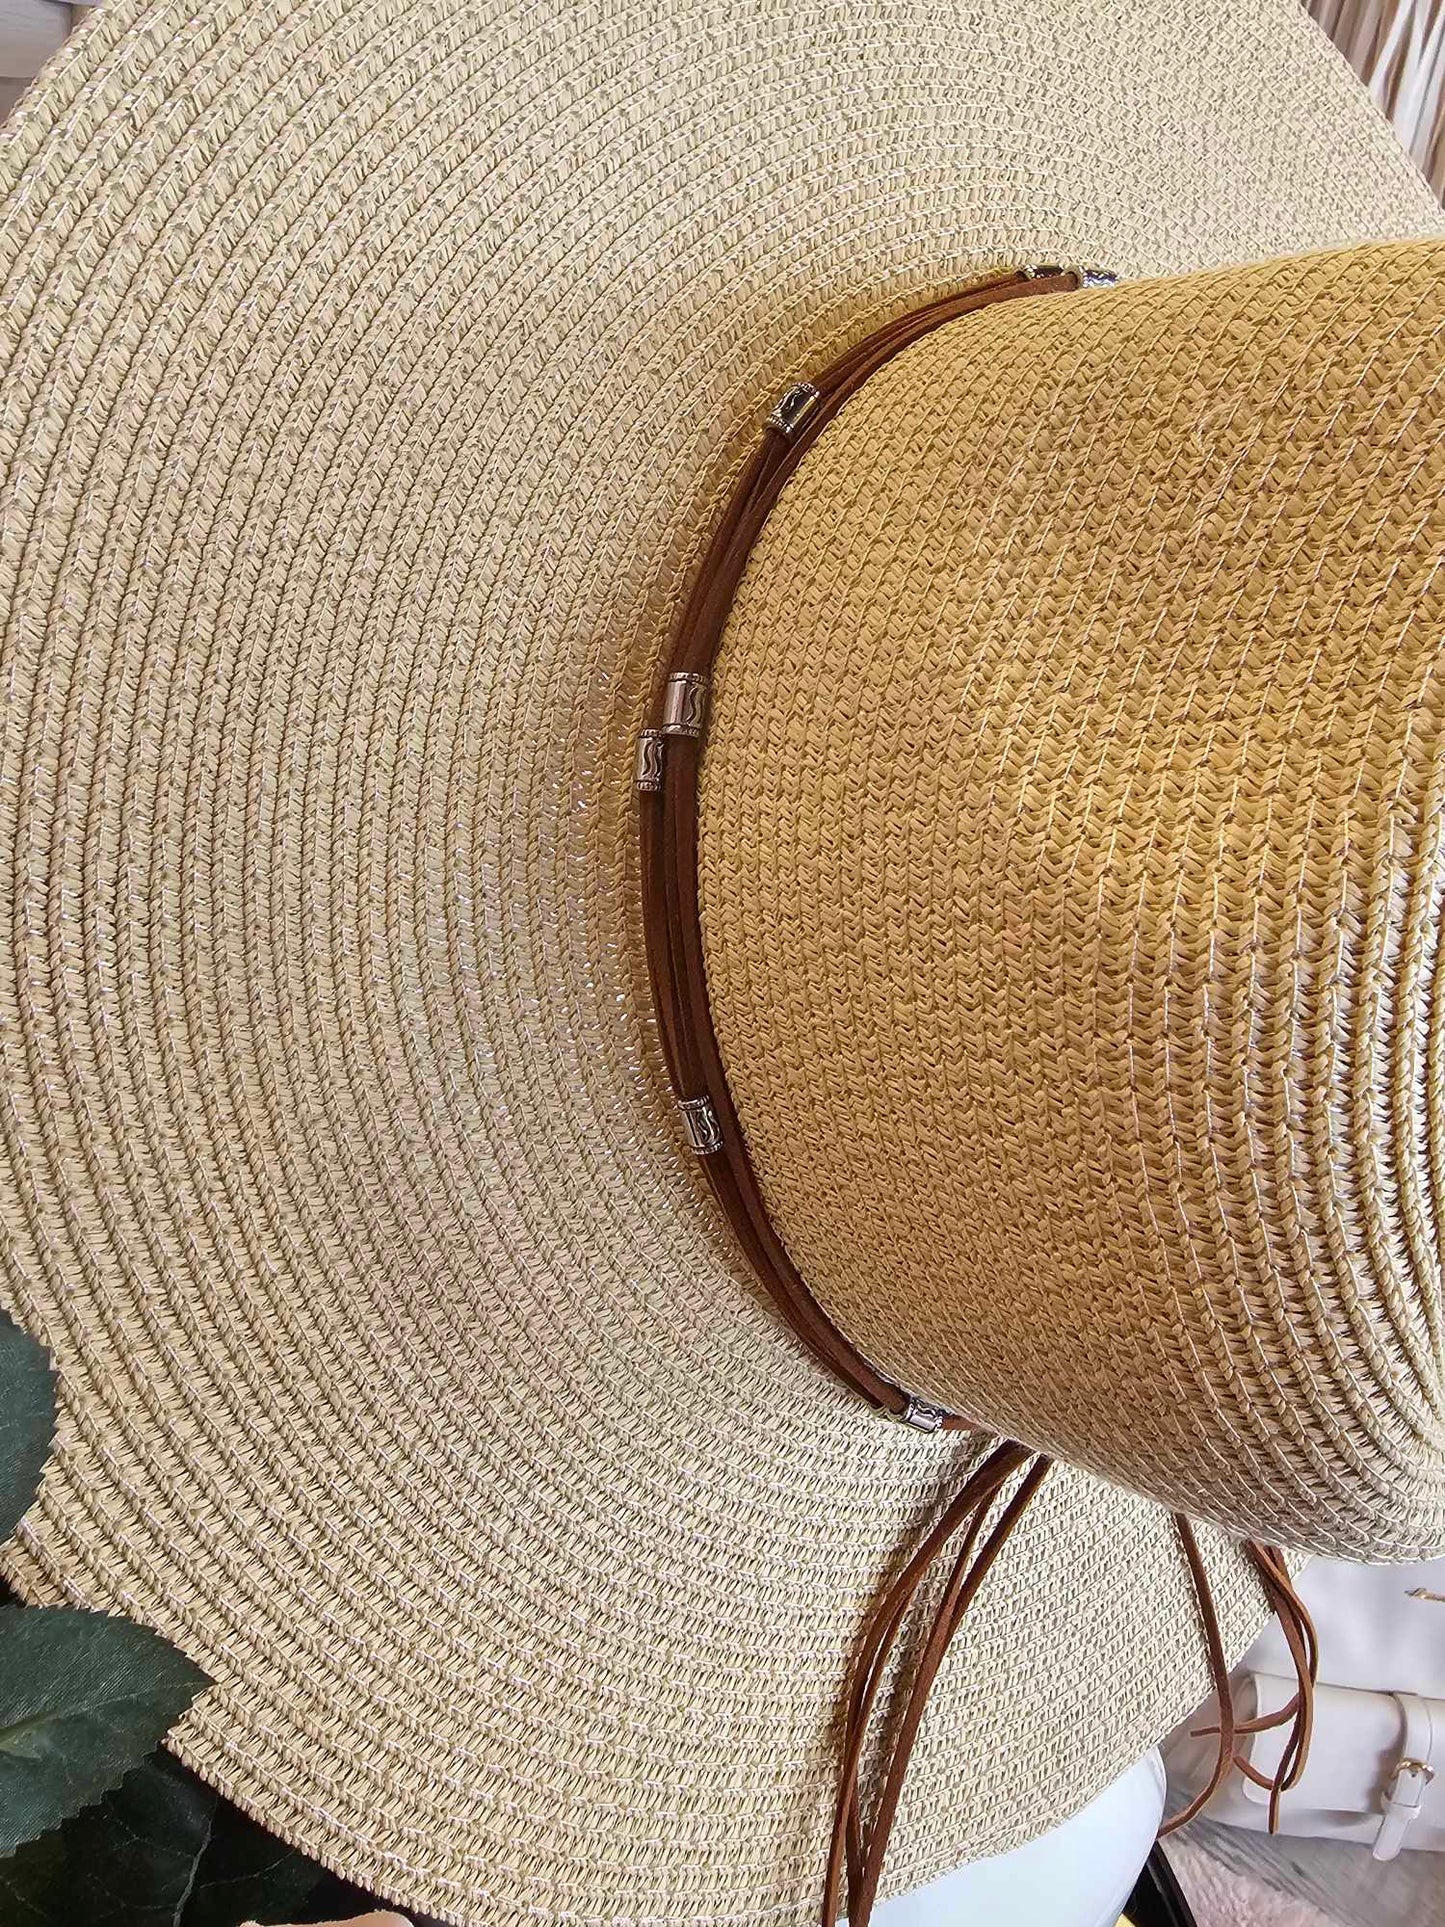 Les chapeaux de plage